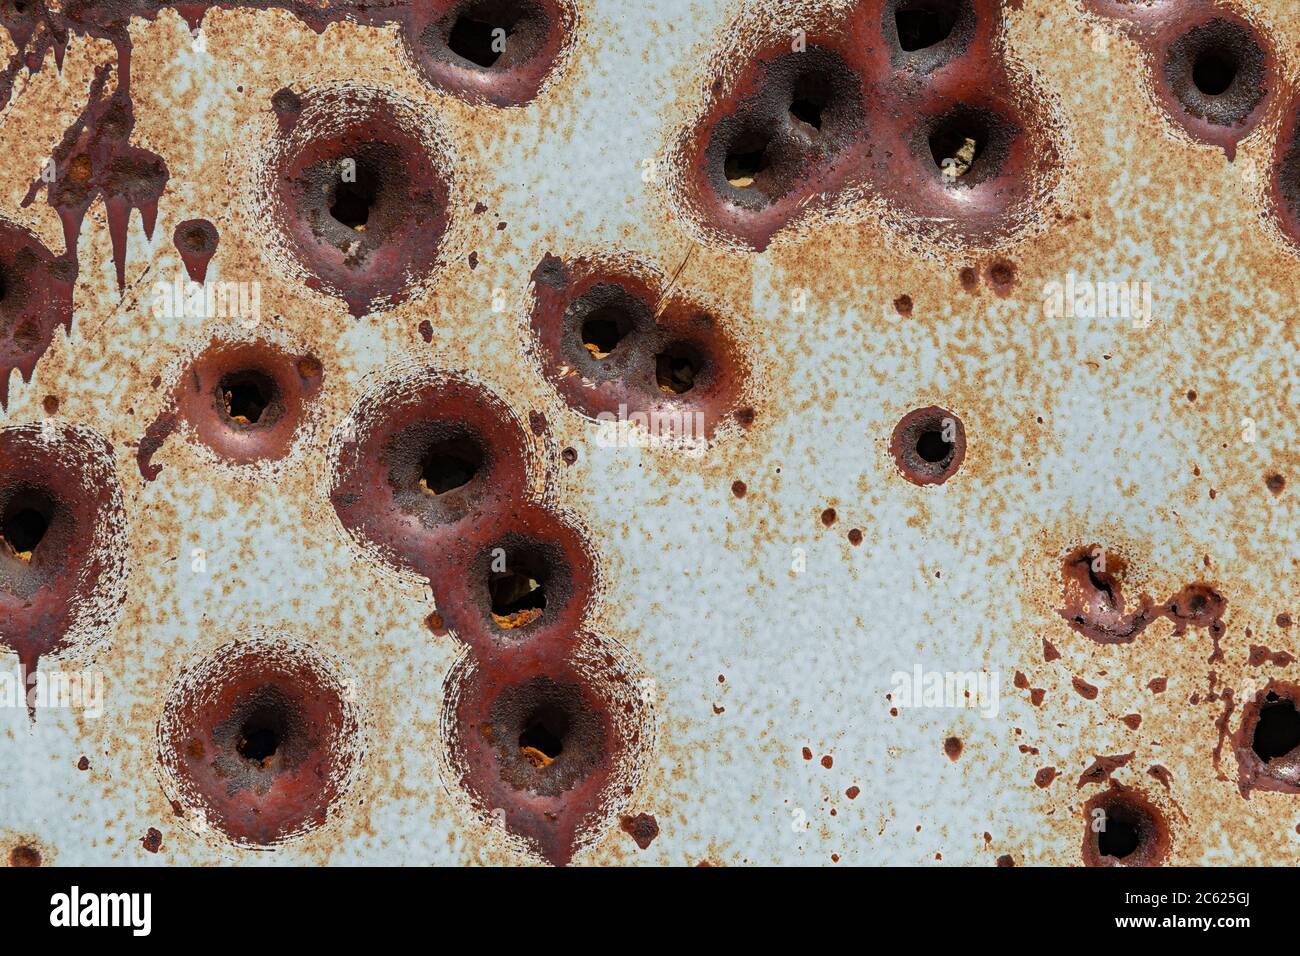 Detalle de agujeros de bala en refrigerador abandonado, Rock Springs Wyoming, EE.UU Foto de stock